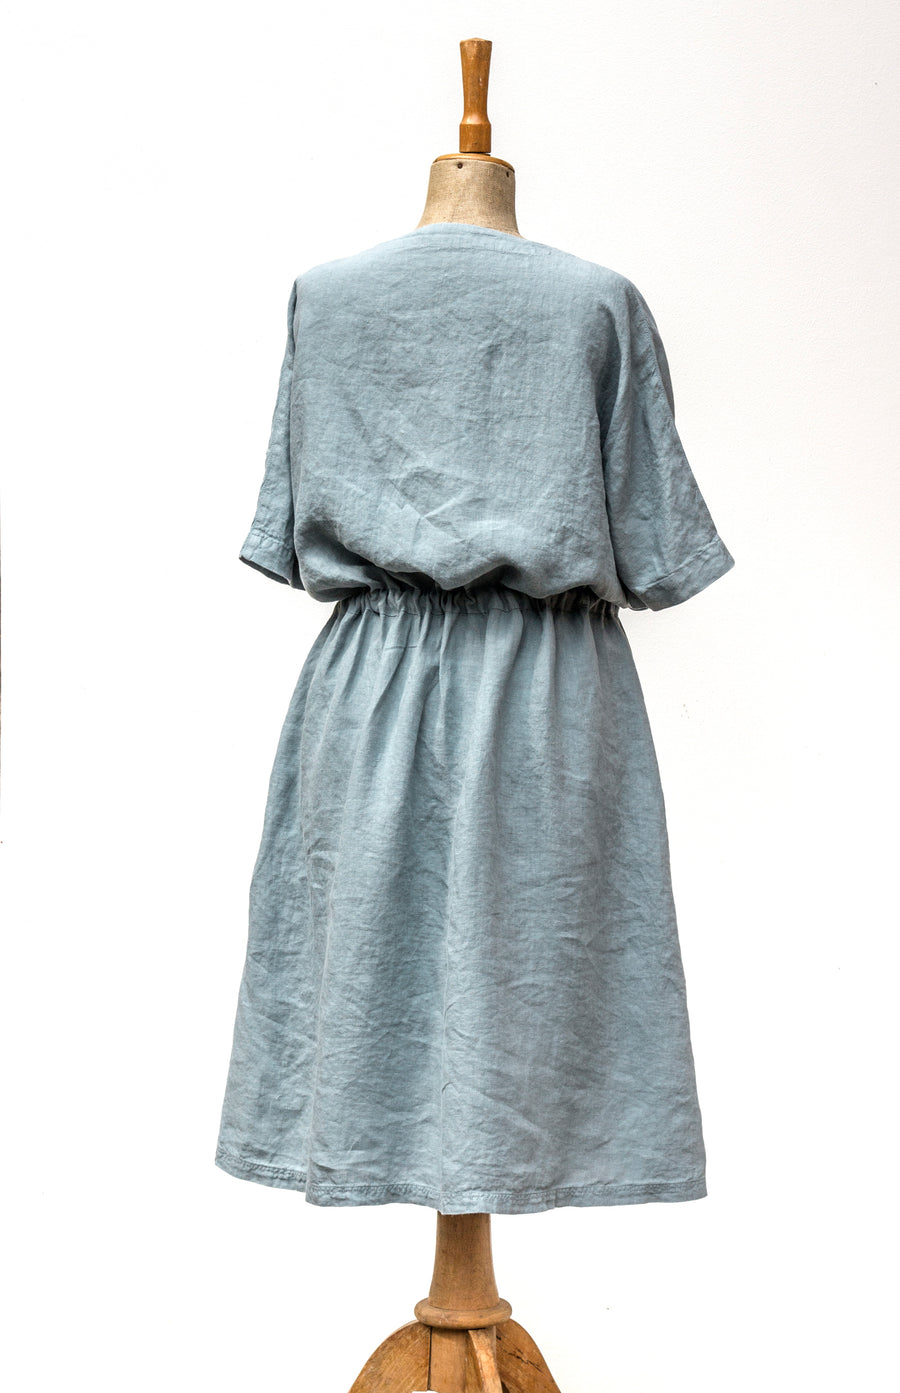 Extra jemné propínací šaty v odstínu Stone Blue